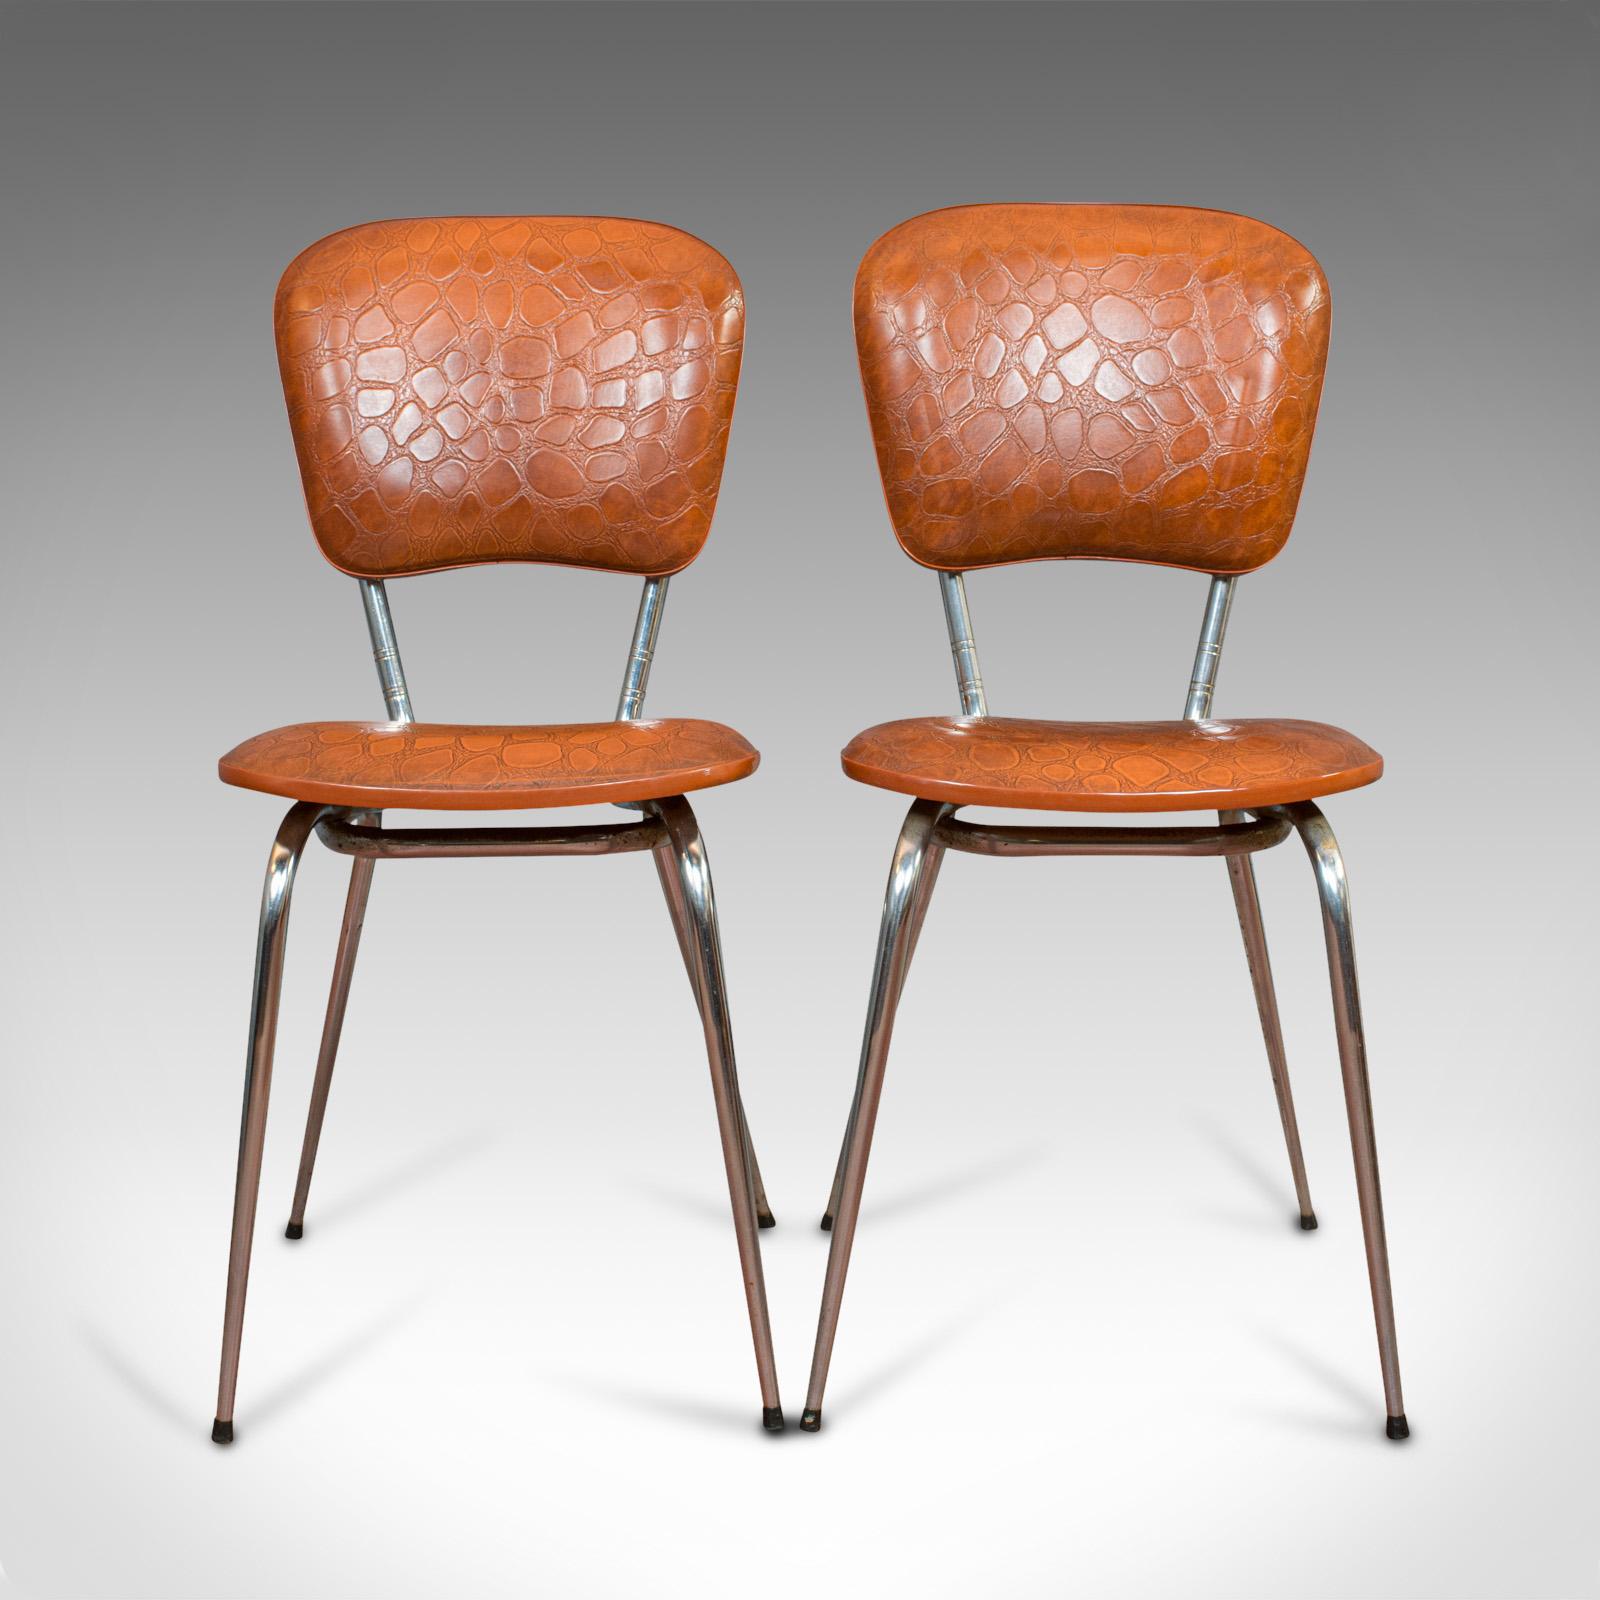 Il s'agit d'une paire de chaises vintage. Chaise de bureau ou de petit déjeuner française, tapissée de faux crocodile, datant du milieu du 20e siècle, vers 1960.

Des teintes riches et une forme moderne attrayante
Affiche une patine vieillie